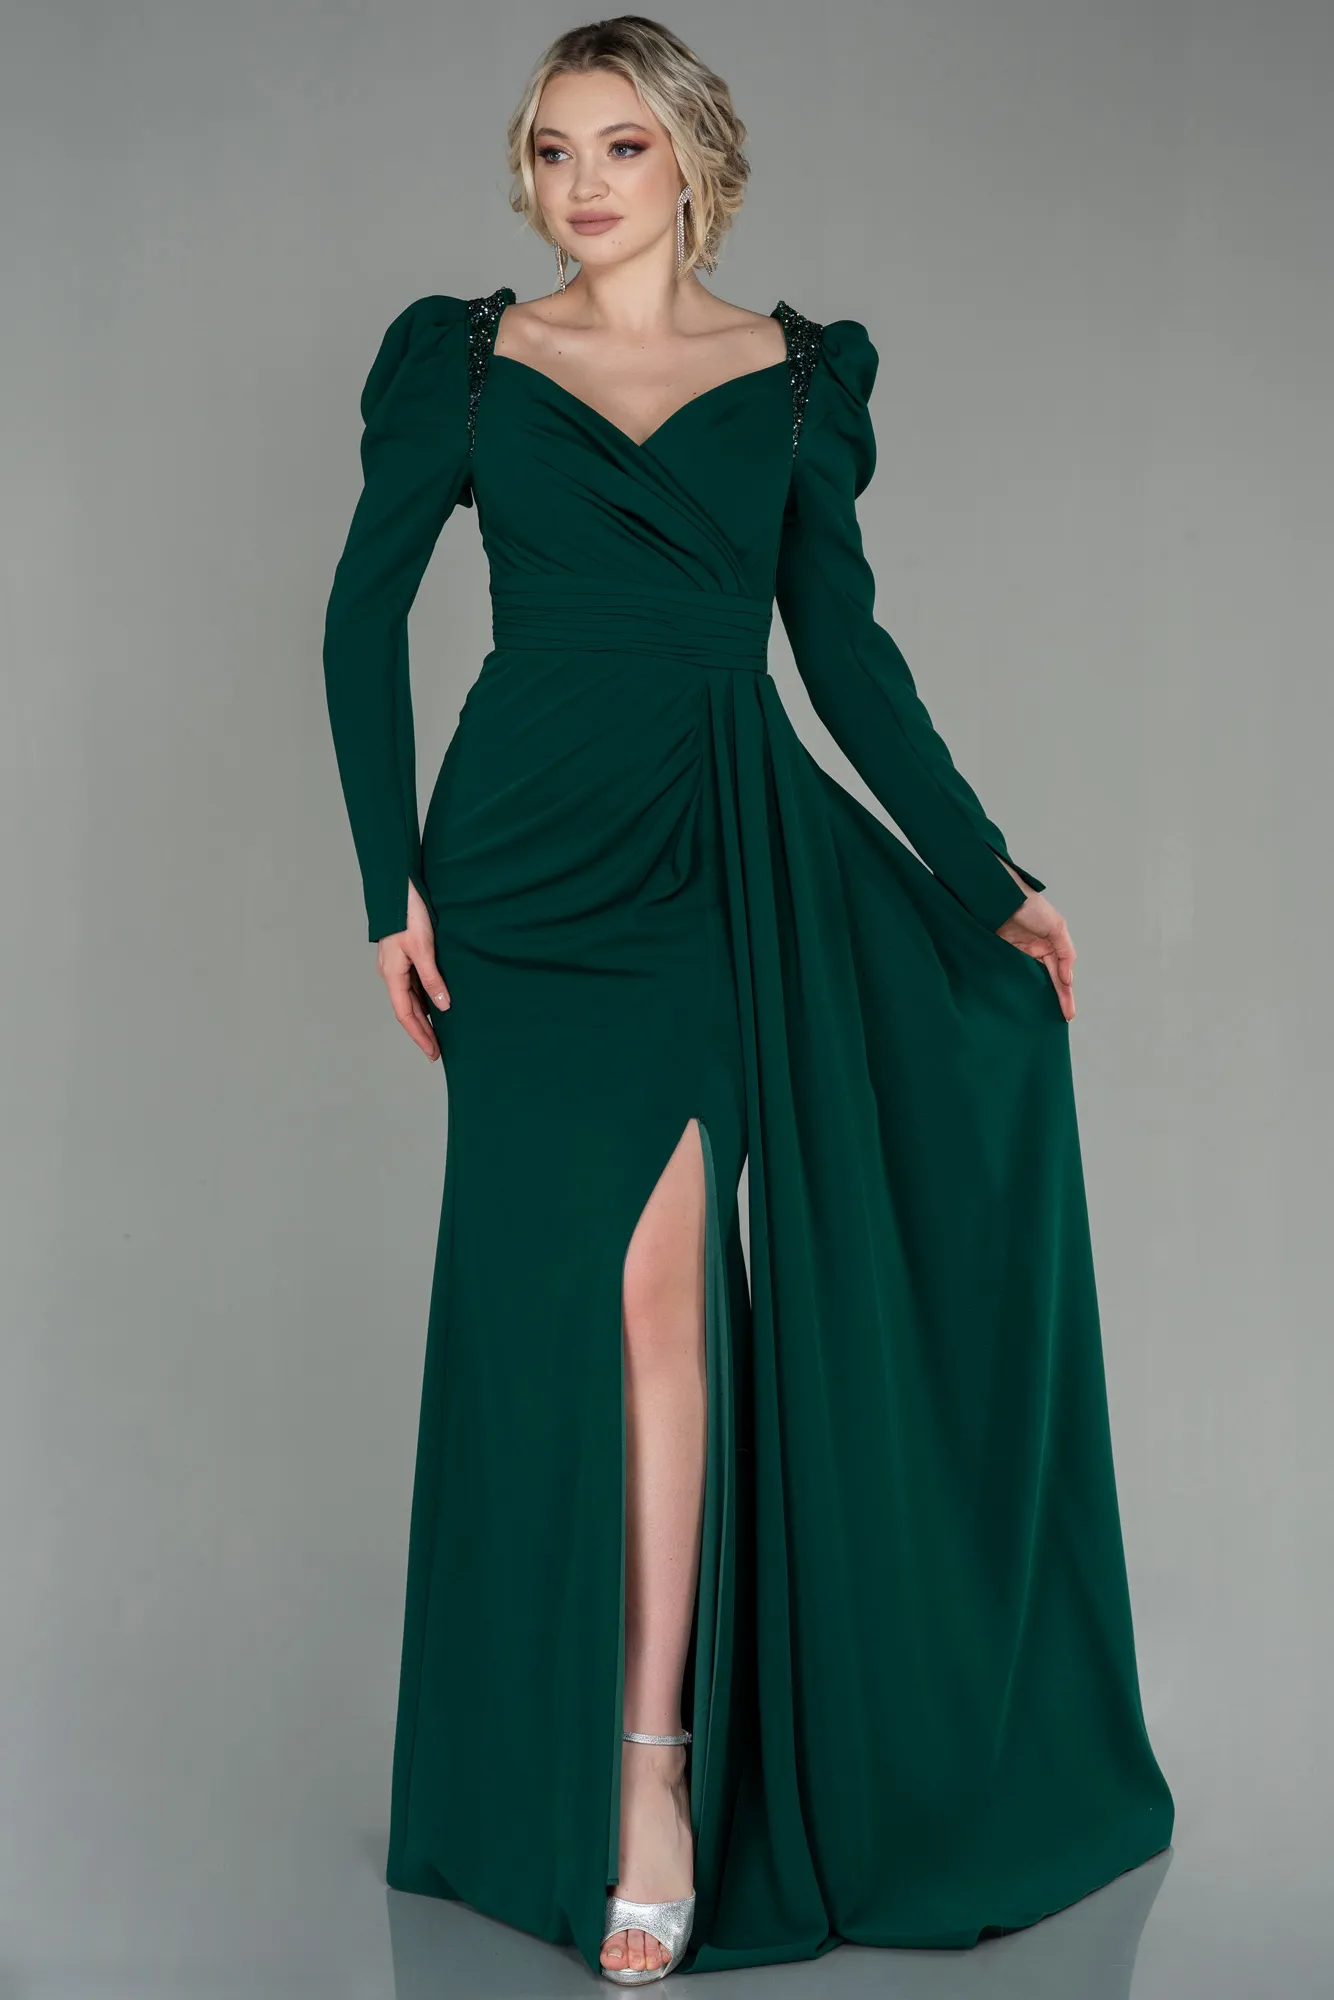 Emerald Green-Long Evening Dress ABU2895